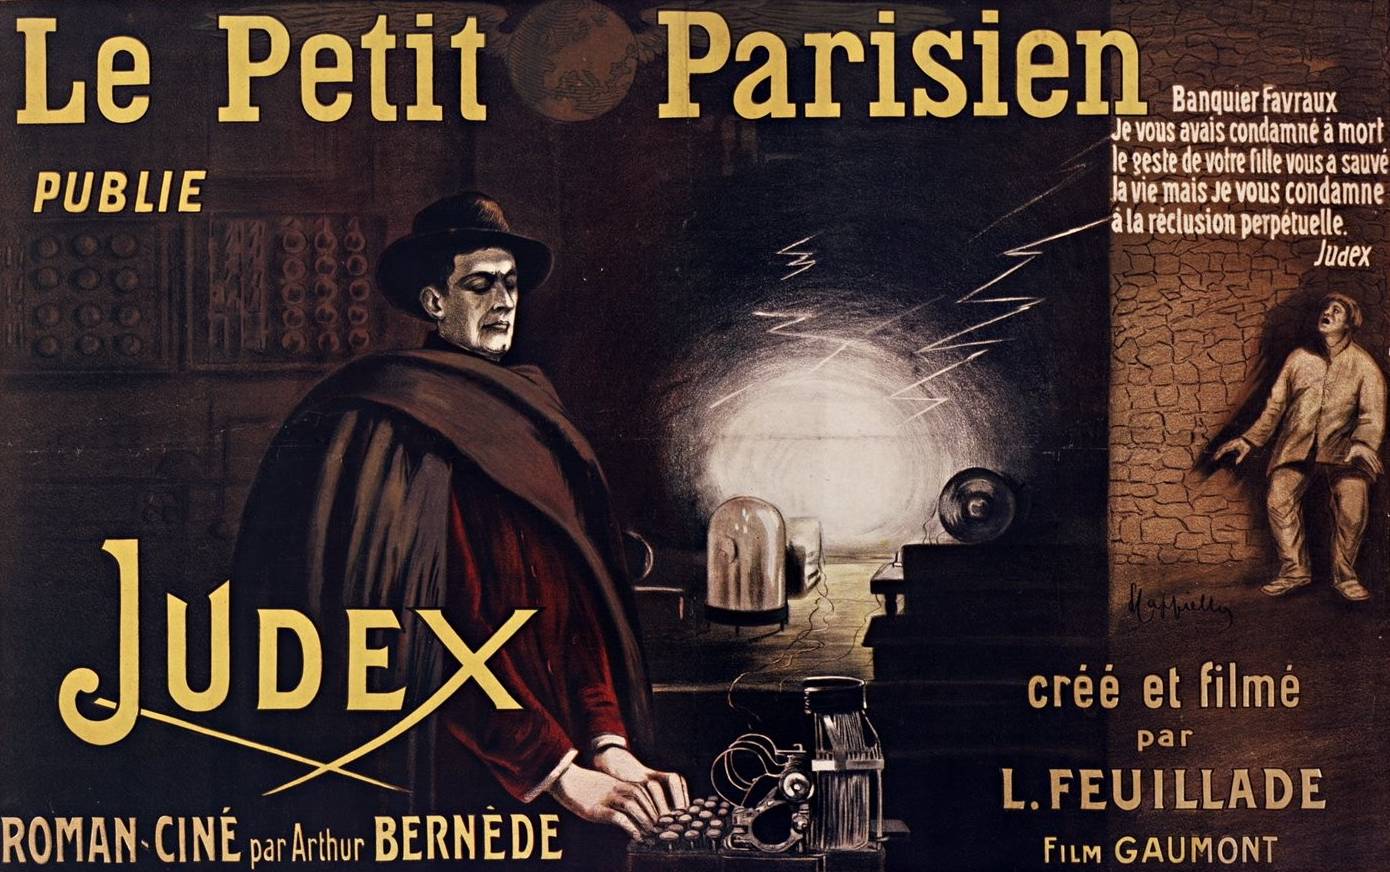 Affiche en faveur de Judex, film-feuilleton publié par Le Petit parisien, L. Cappiello, 1916 - source : Gallica-BnF